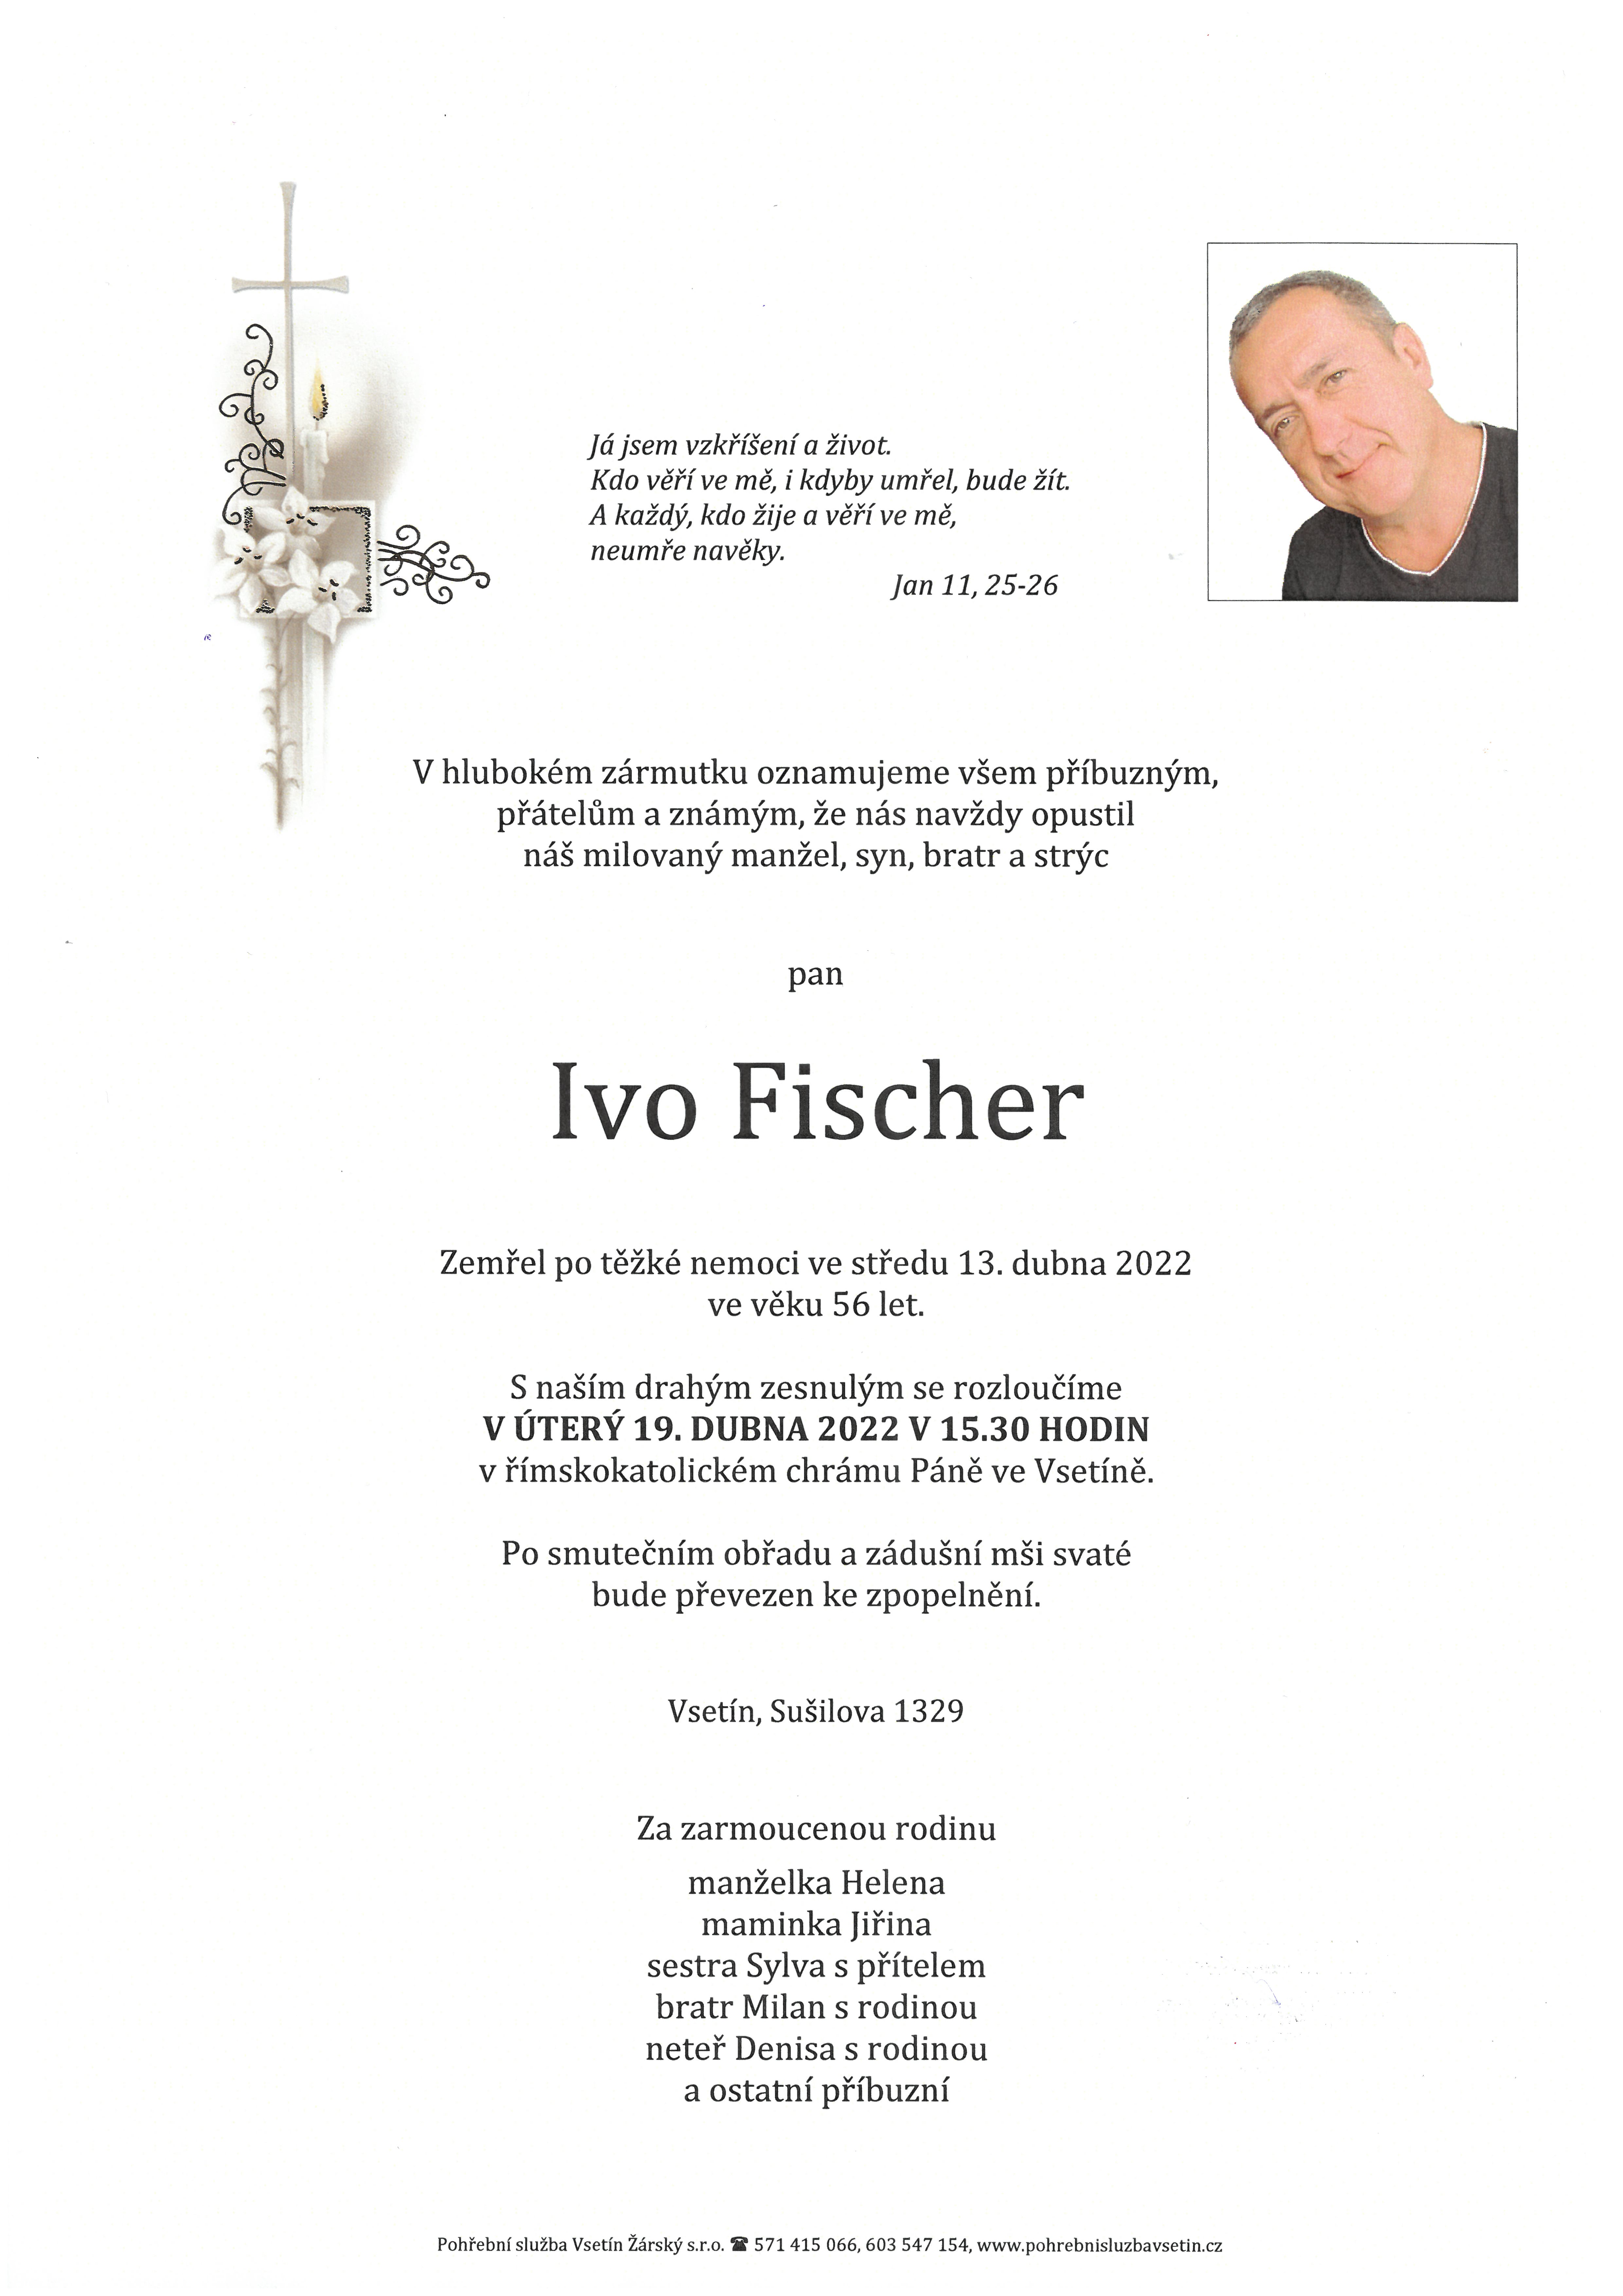 Ivo Fischer